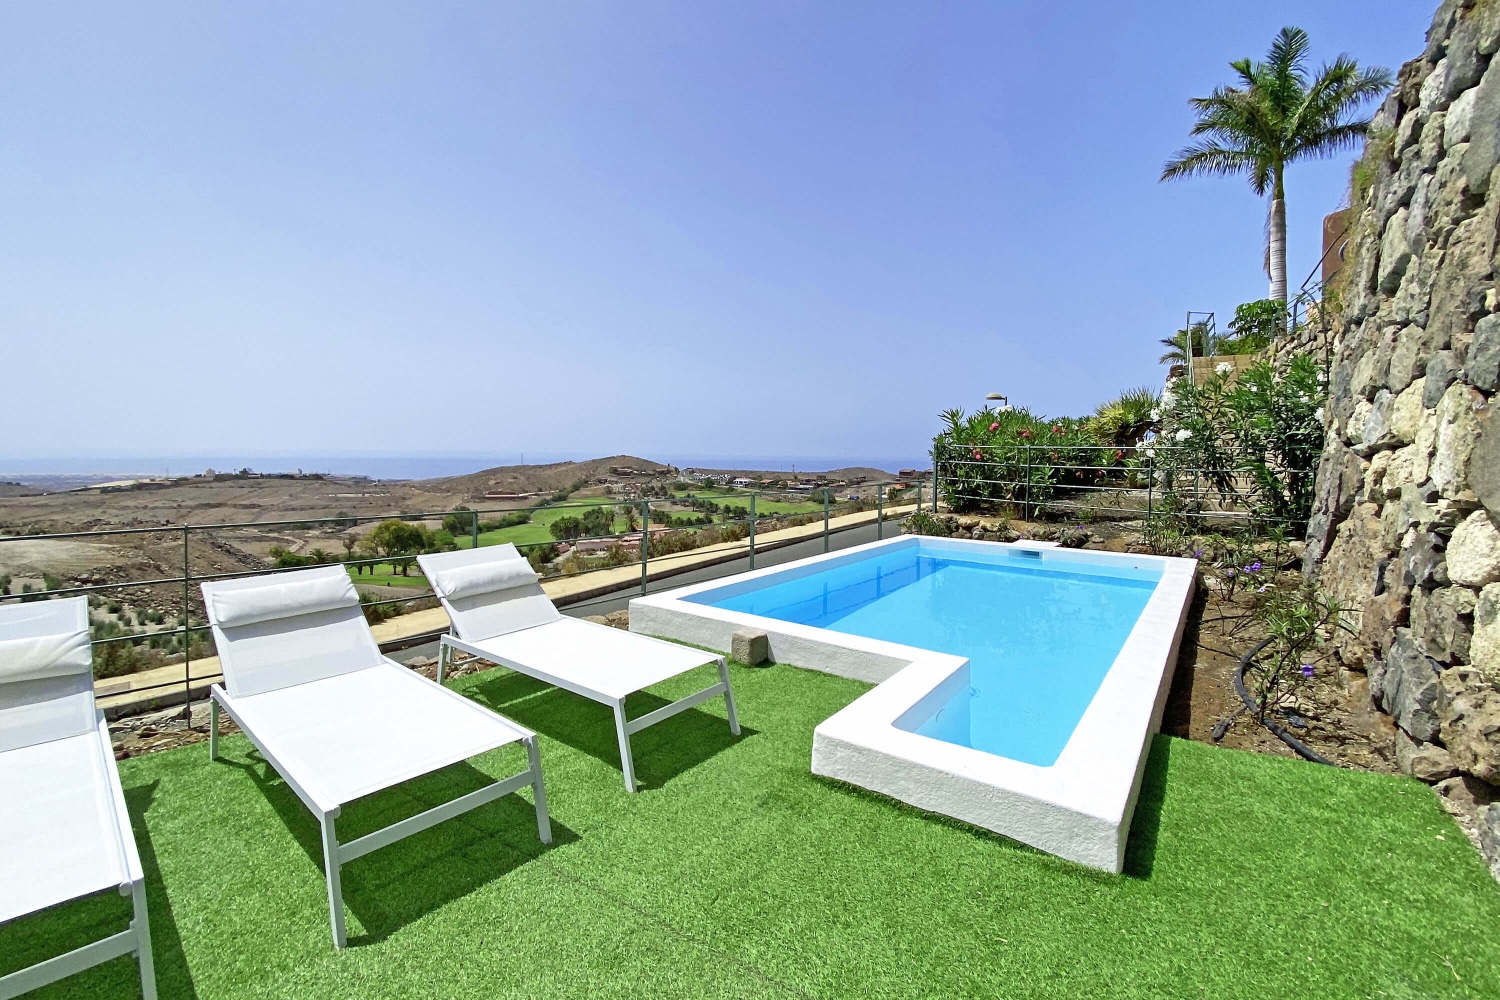 Tre værelses villa, dejlig have og stor fælles pool i Morro Golf kompleks med udsigt over golfbanen